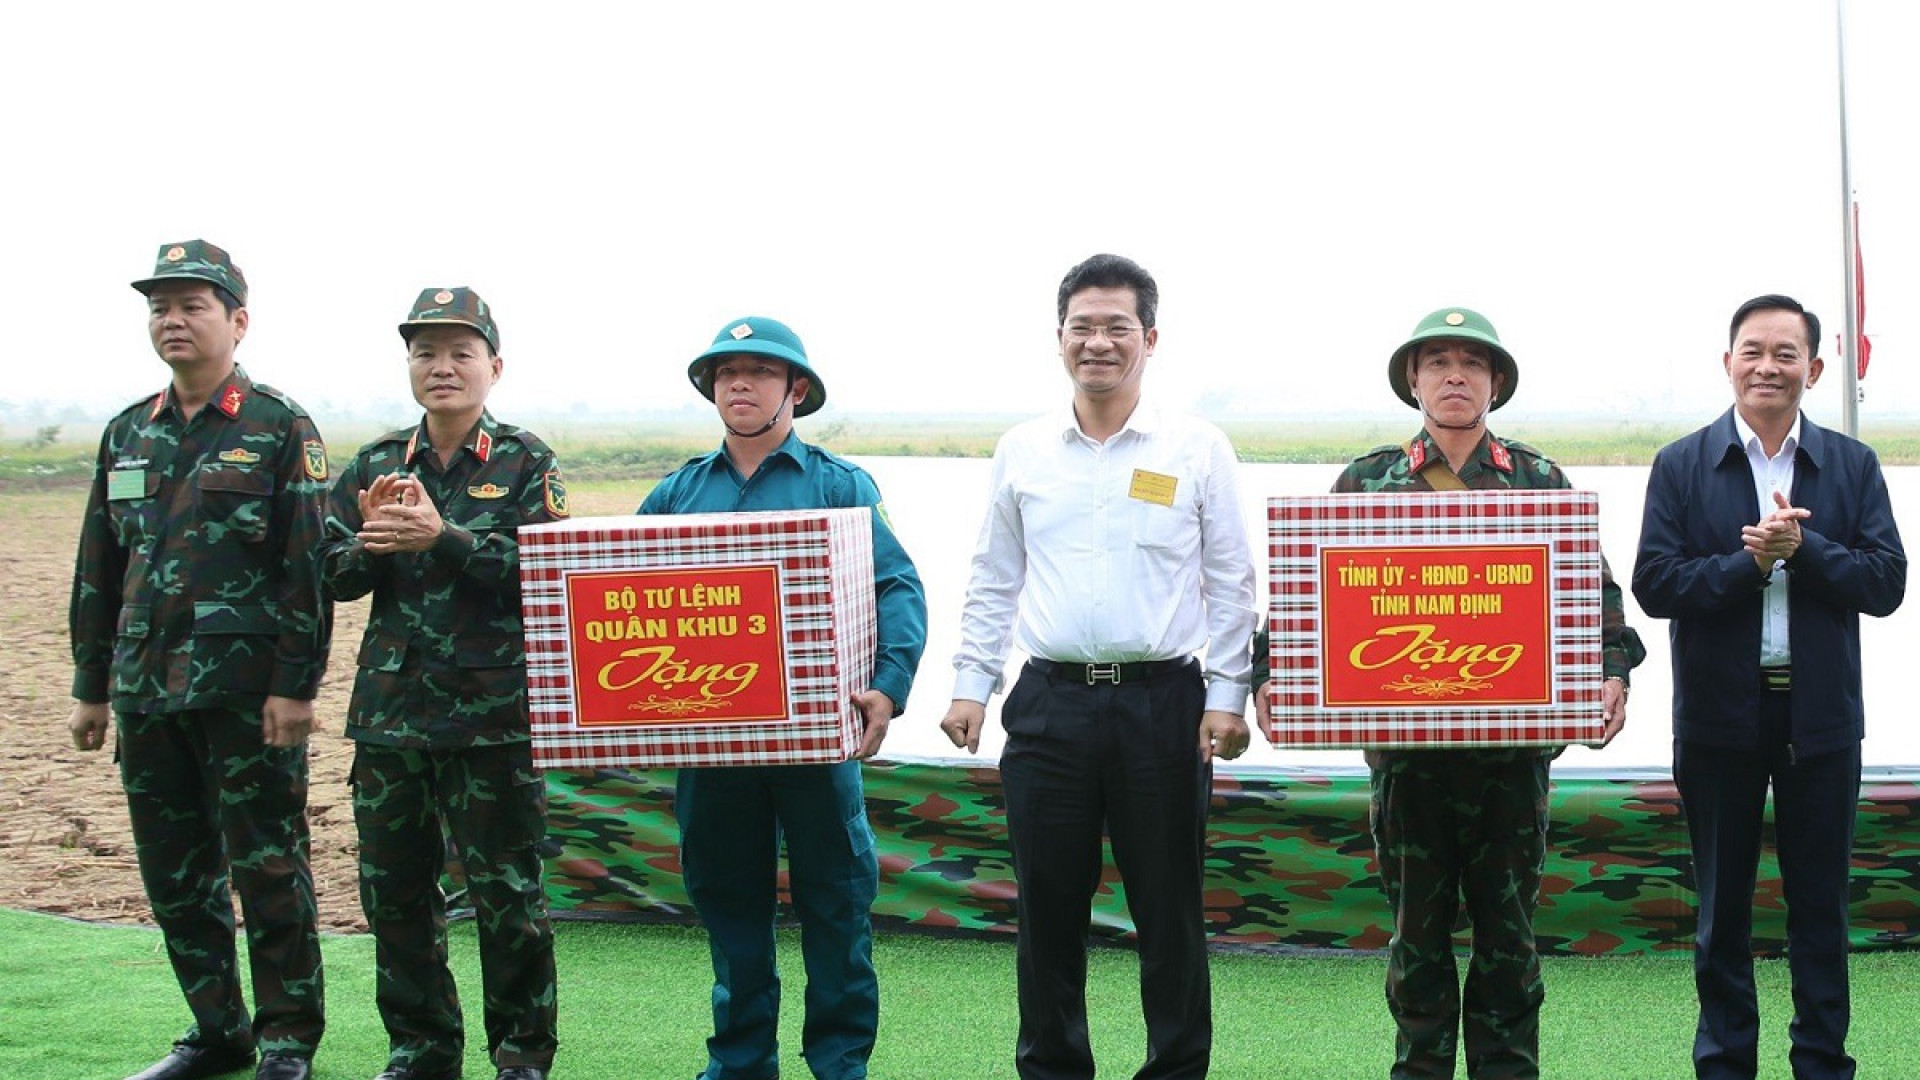 Bộ CHQS tỉnh Nam Định hoàn thành diễn tập chỉ huy - cơ quan 1 bên, 2 cấp